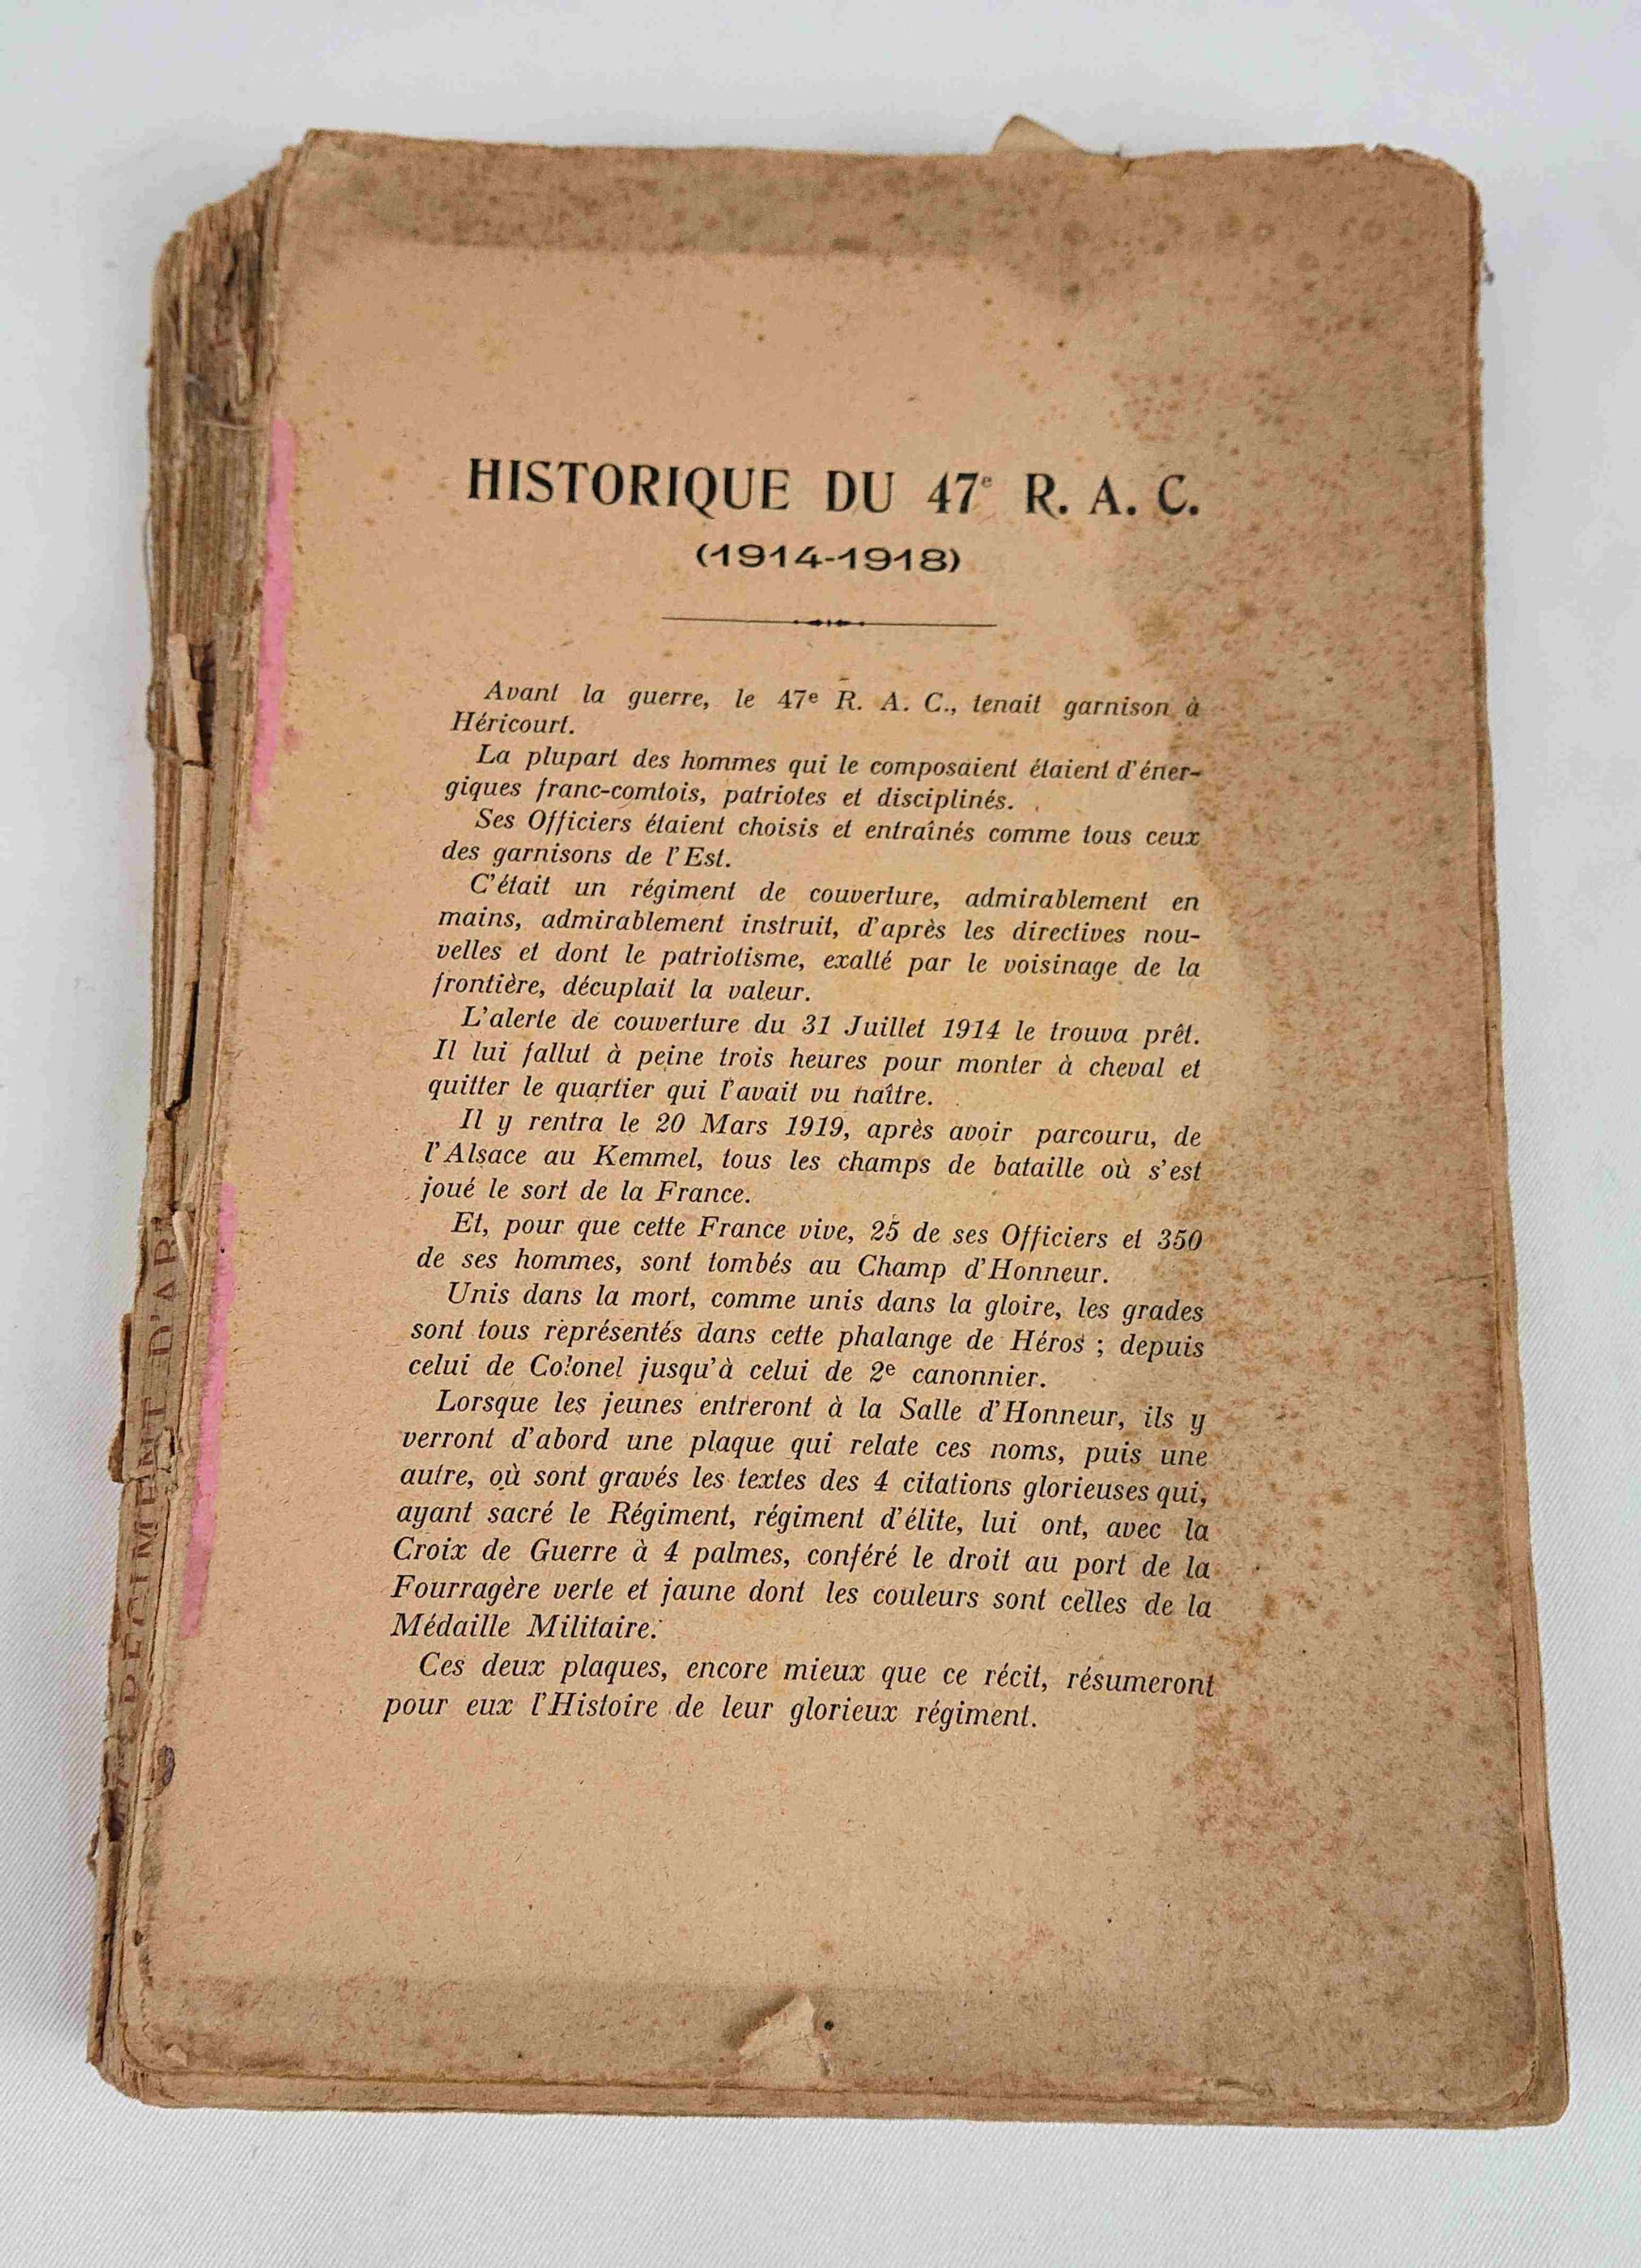 militaria : Historique du 47 RAC / history of the 47 RAC